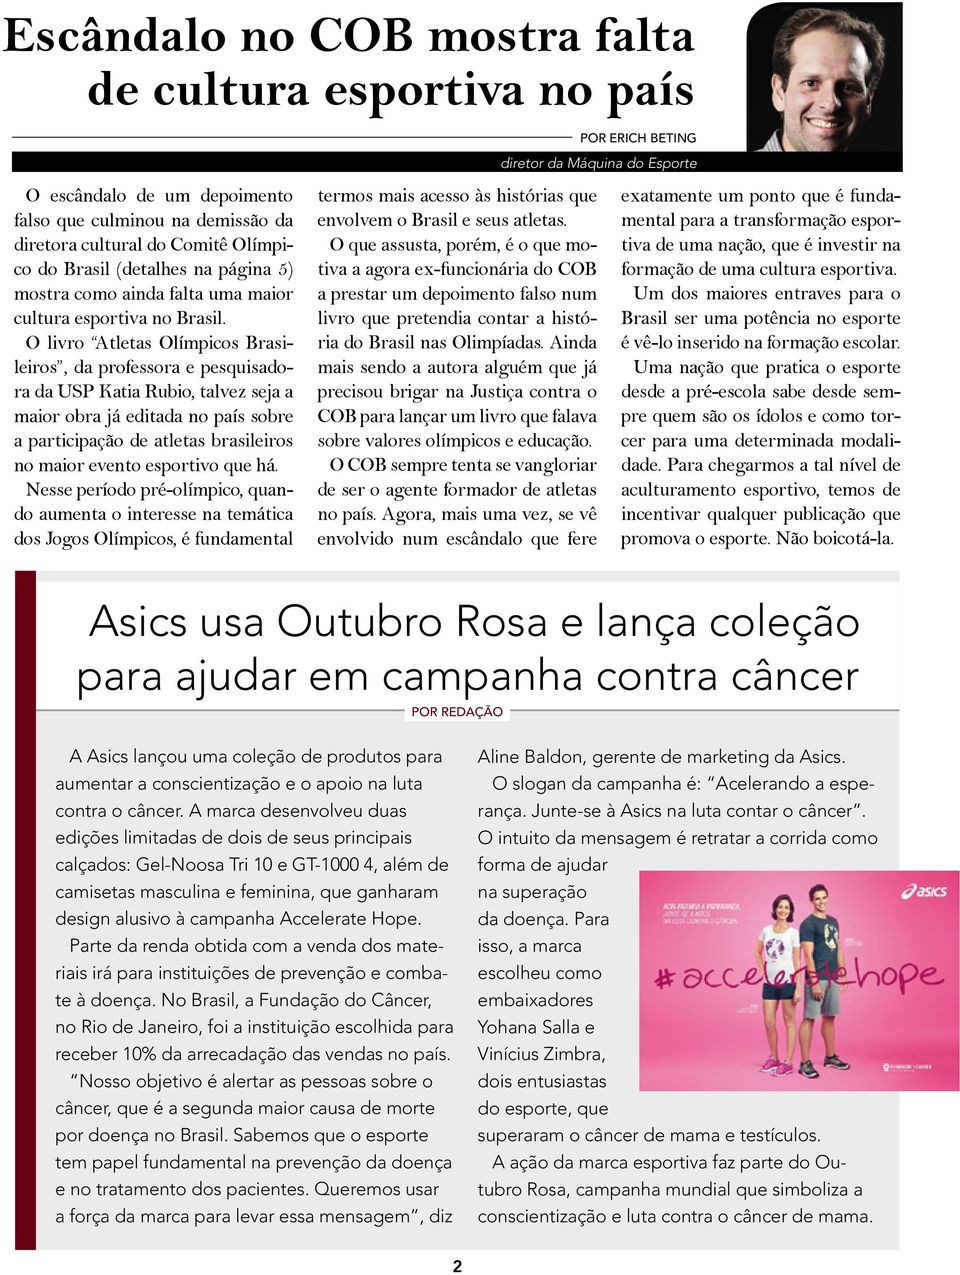 O livro Atletas Olímpicos Brasileiros, da professora e pesquisadora da USP Katia Rubio, talvez seja a maior obra já editada no país sobre a participação de atletas brasileiros no maior evento